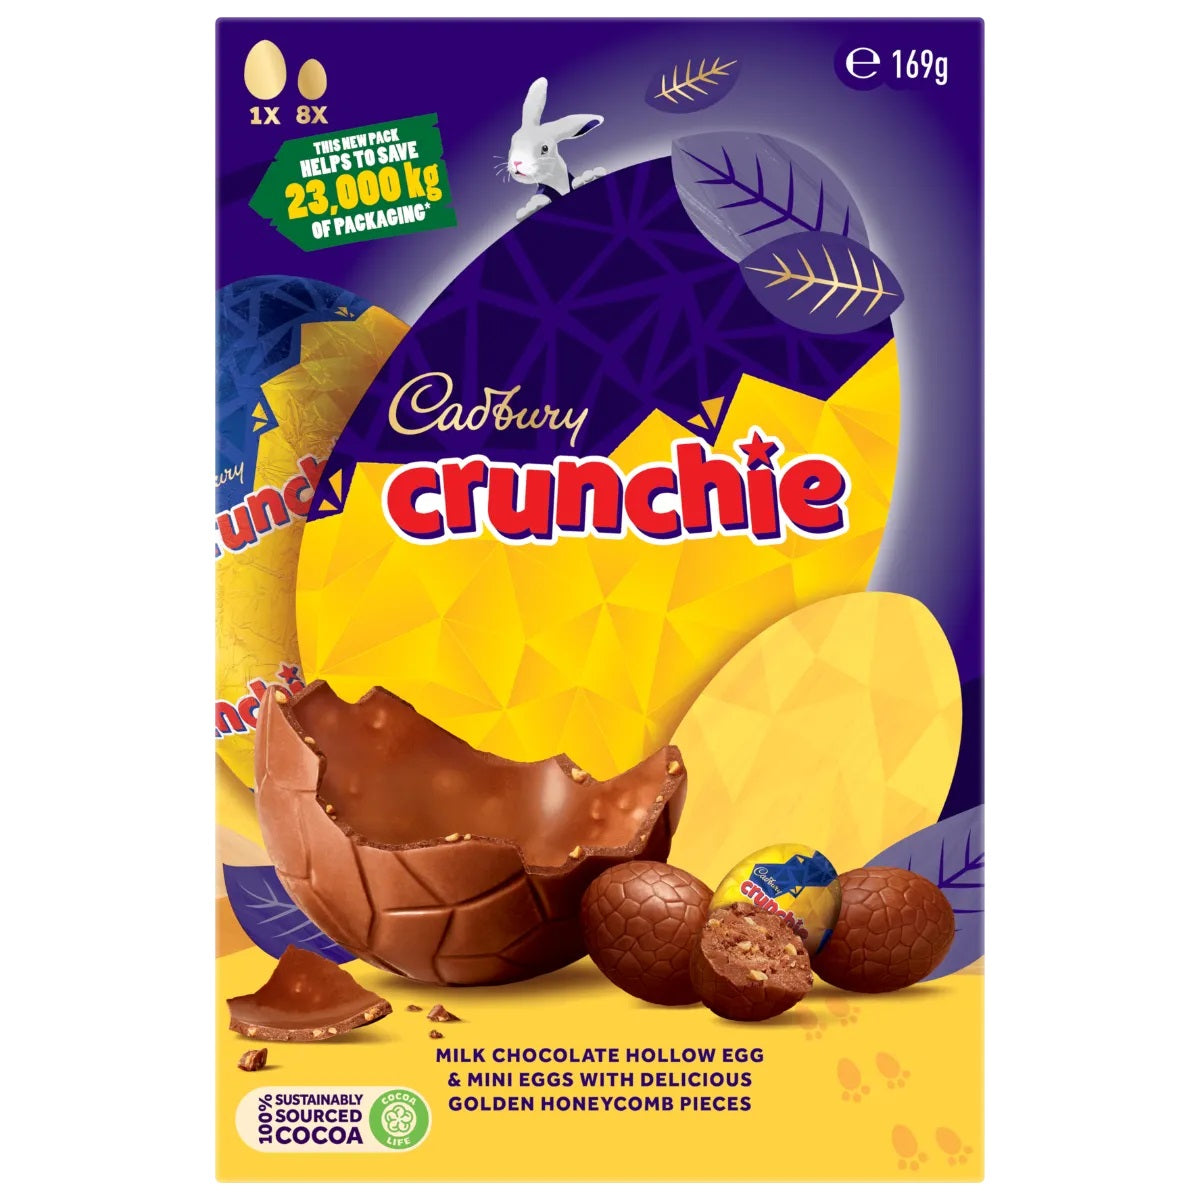 Cadbury Crunchie Gift Box 169G | Bookazine HK